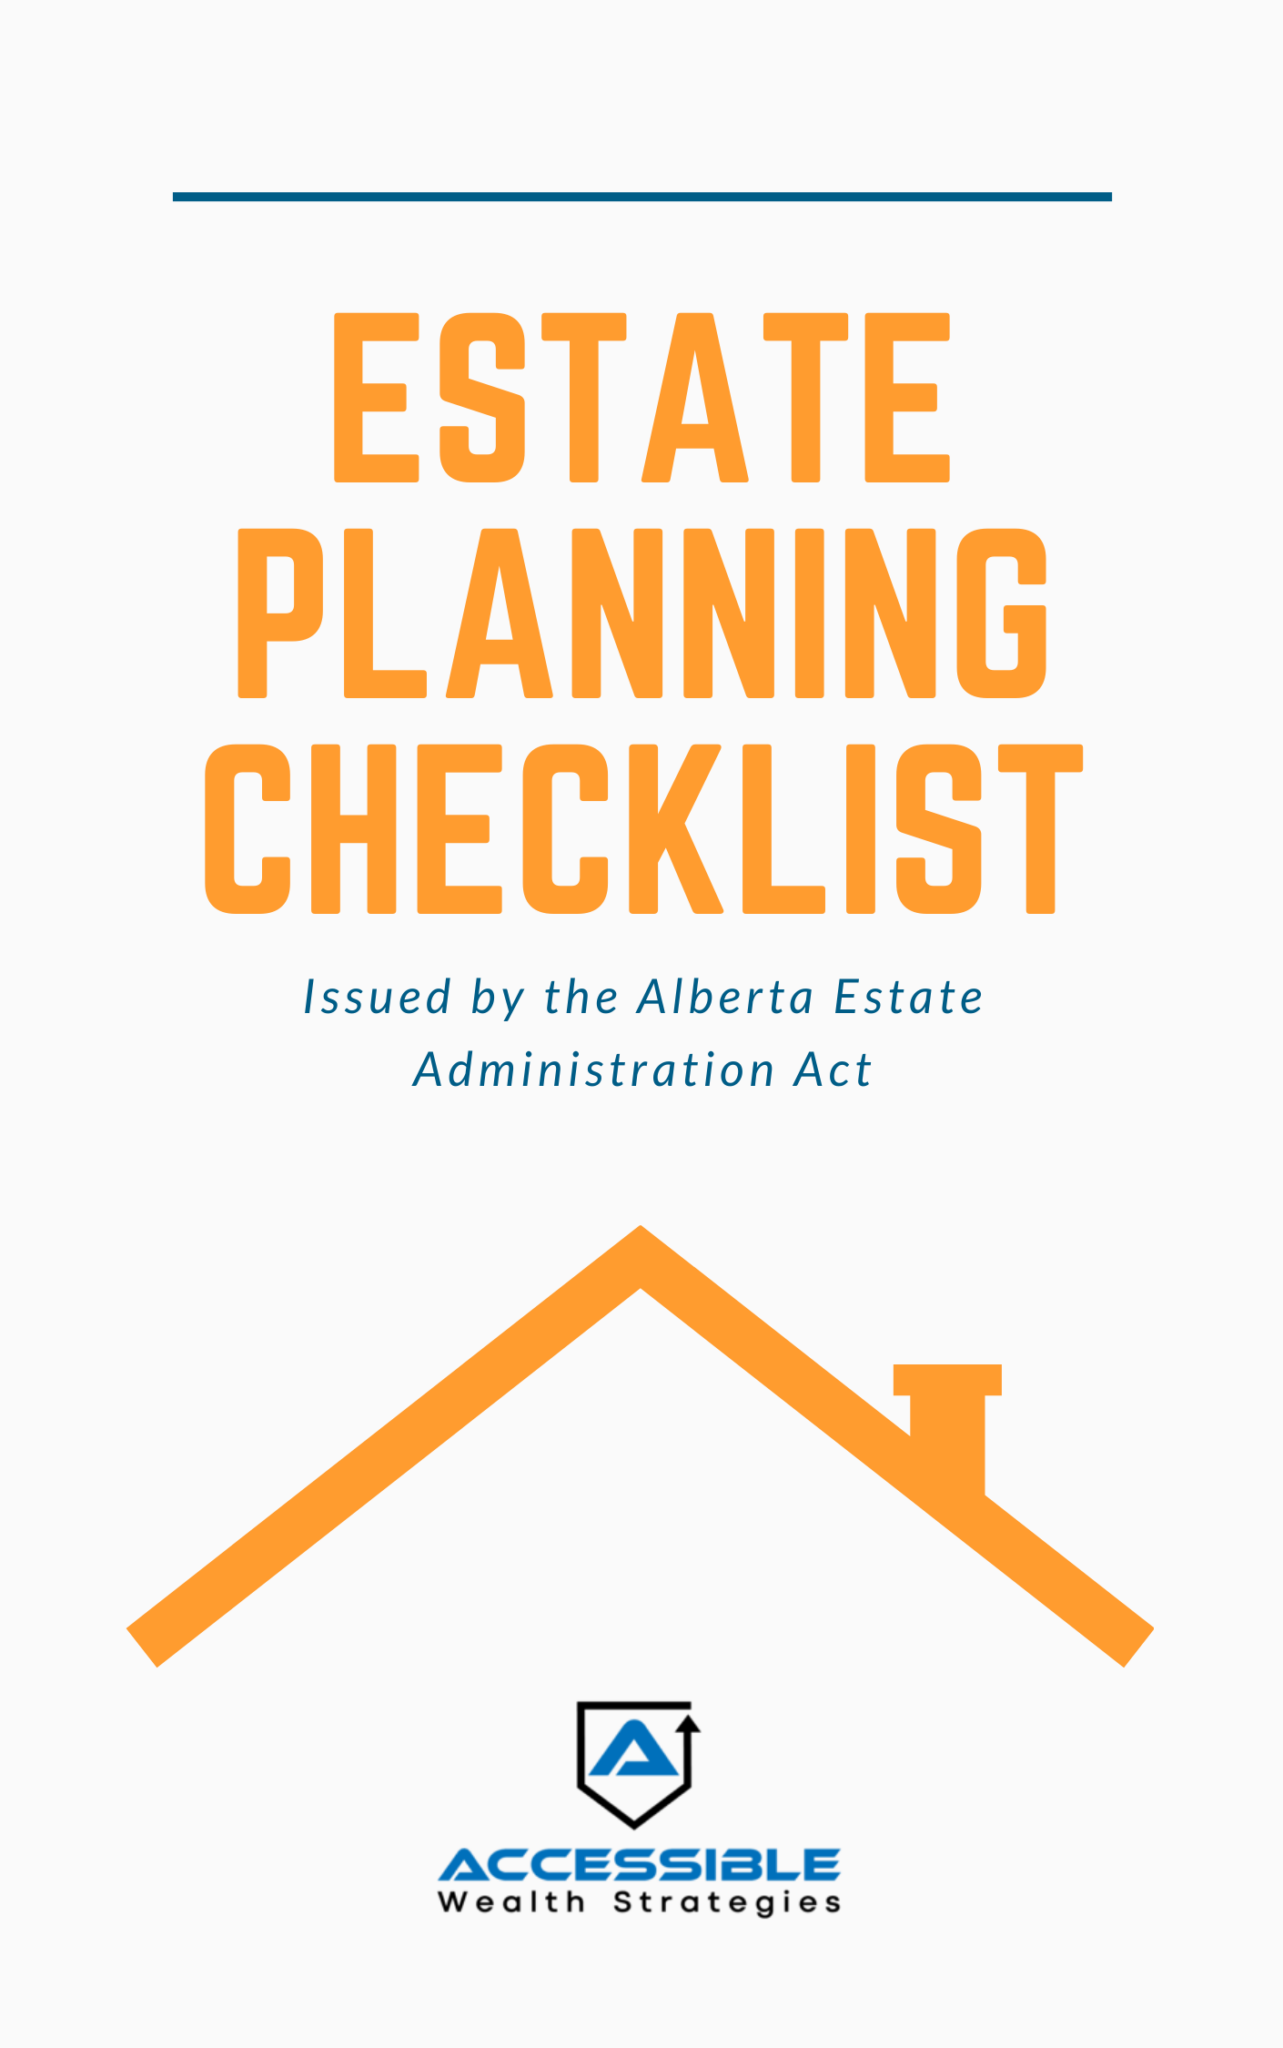 estate planning checklist aarp